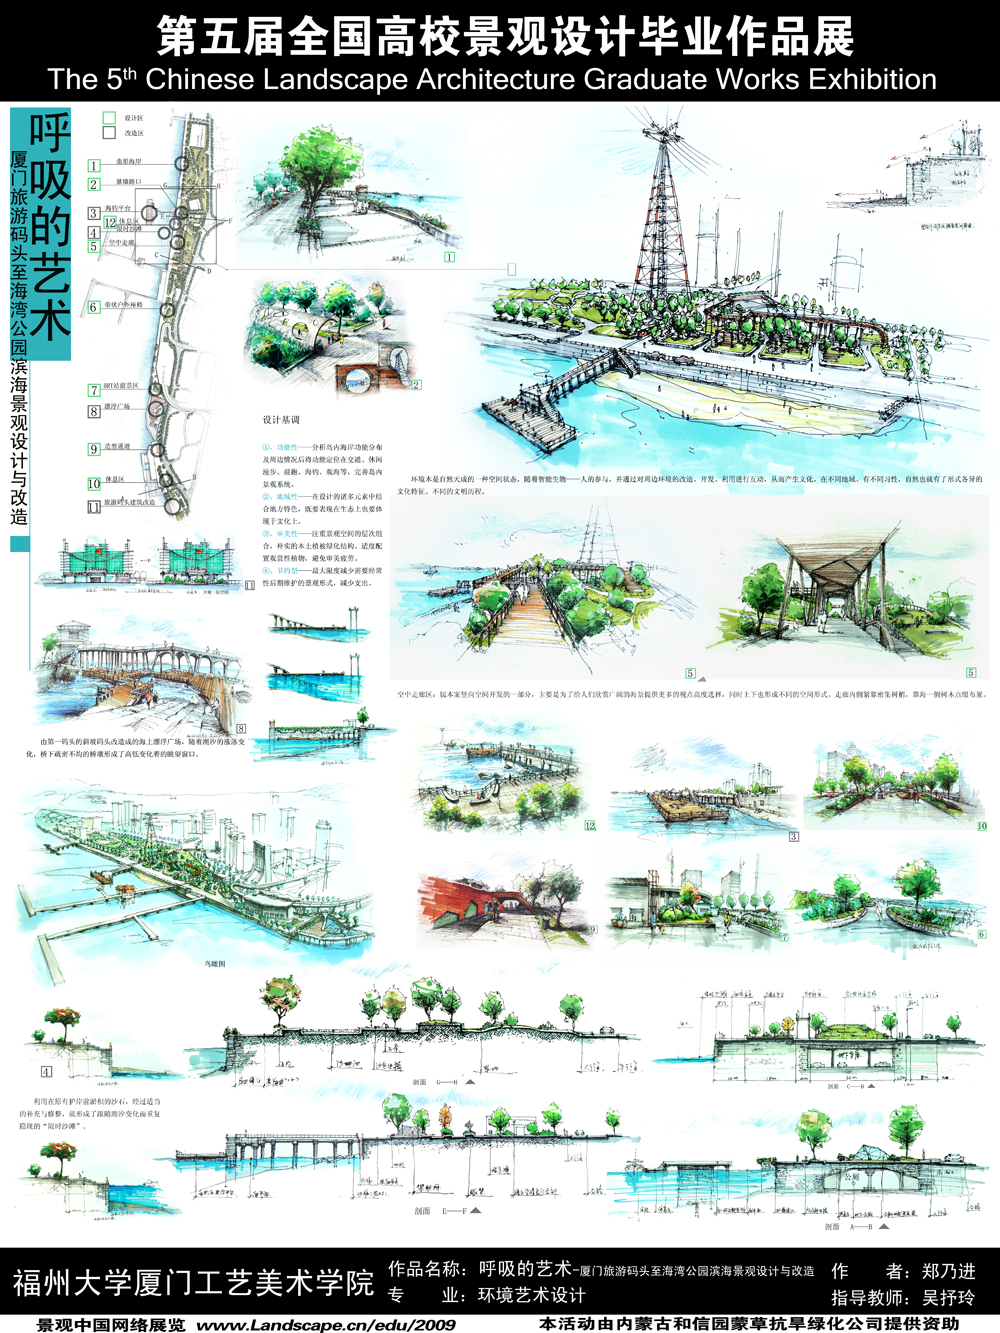 呼吸的艺术——厦门旅游码头至海湾公园滨海景观设计与...-2